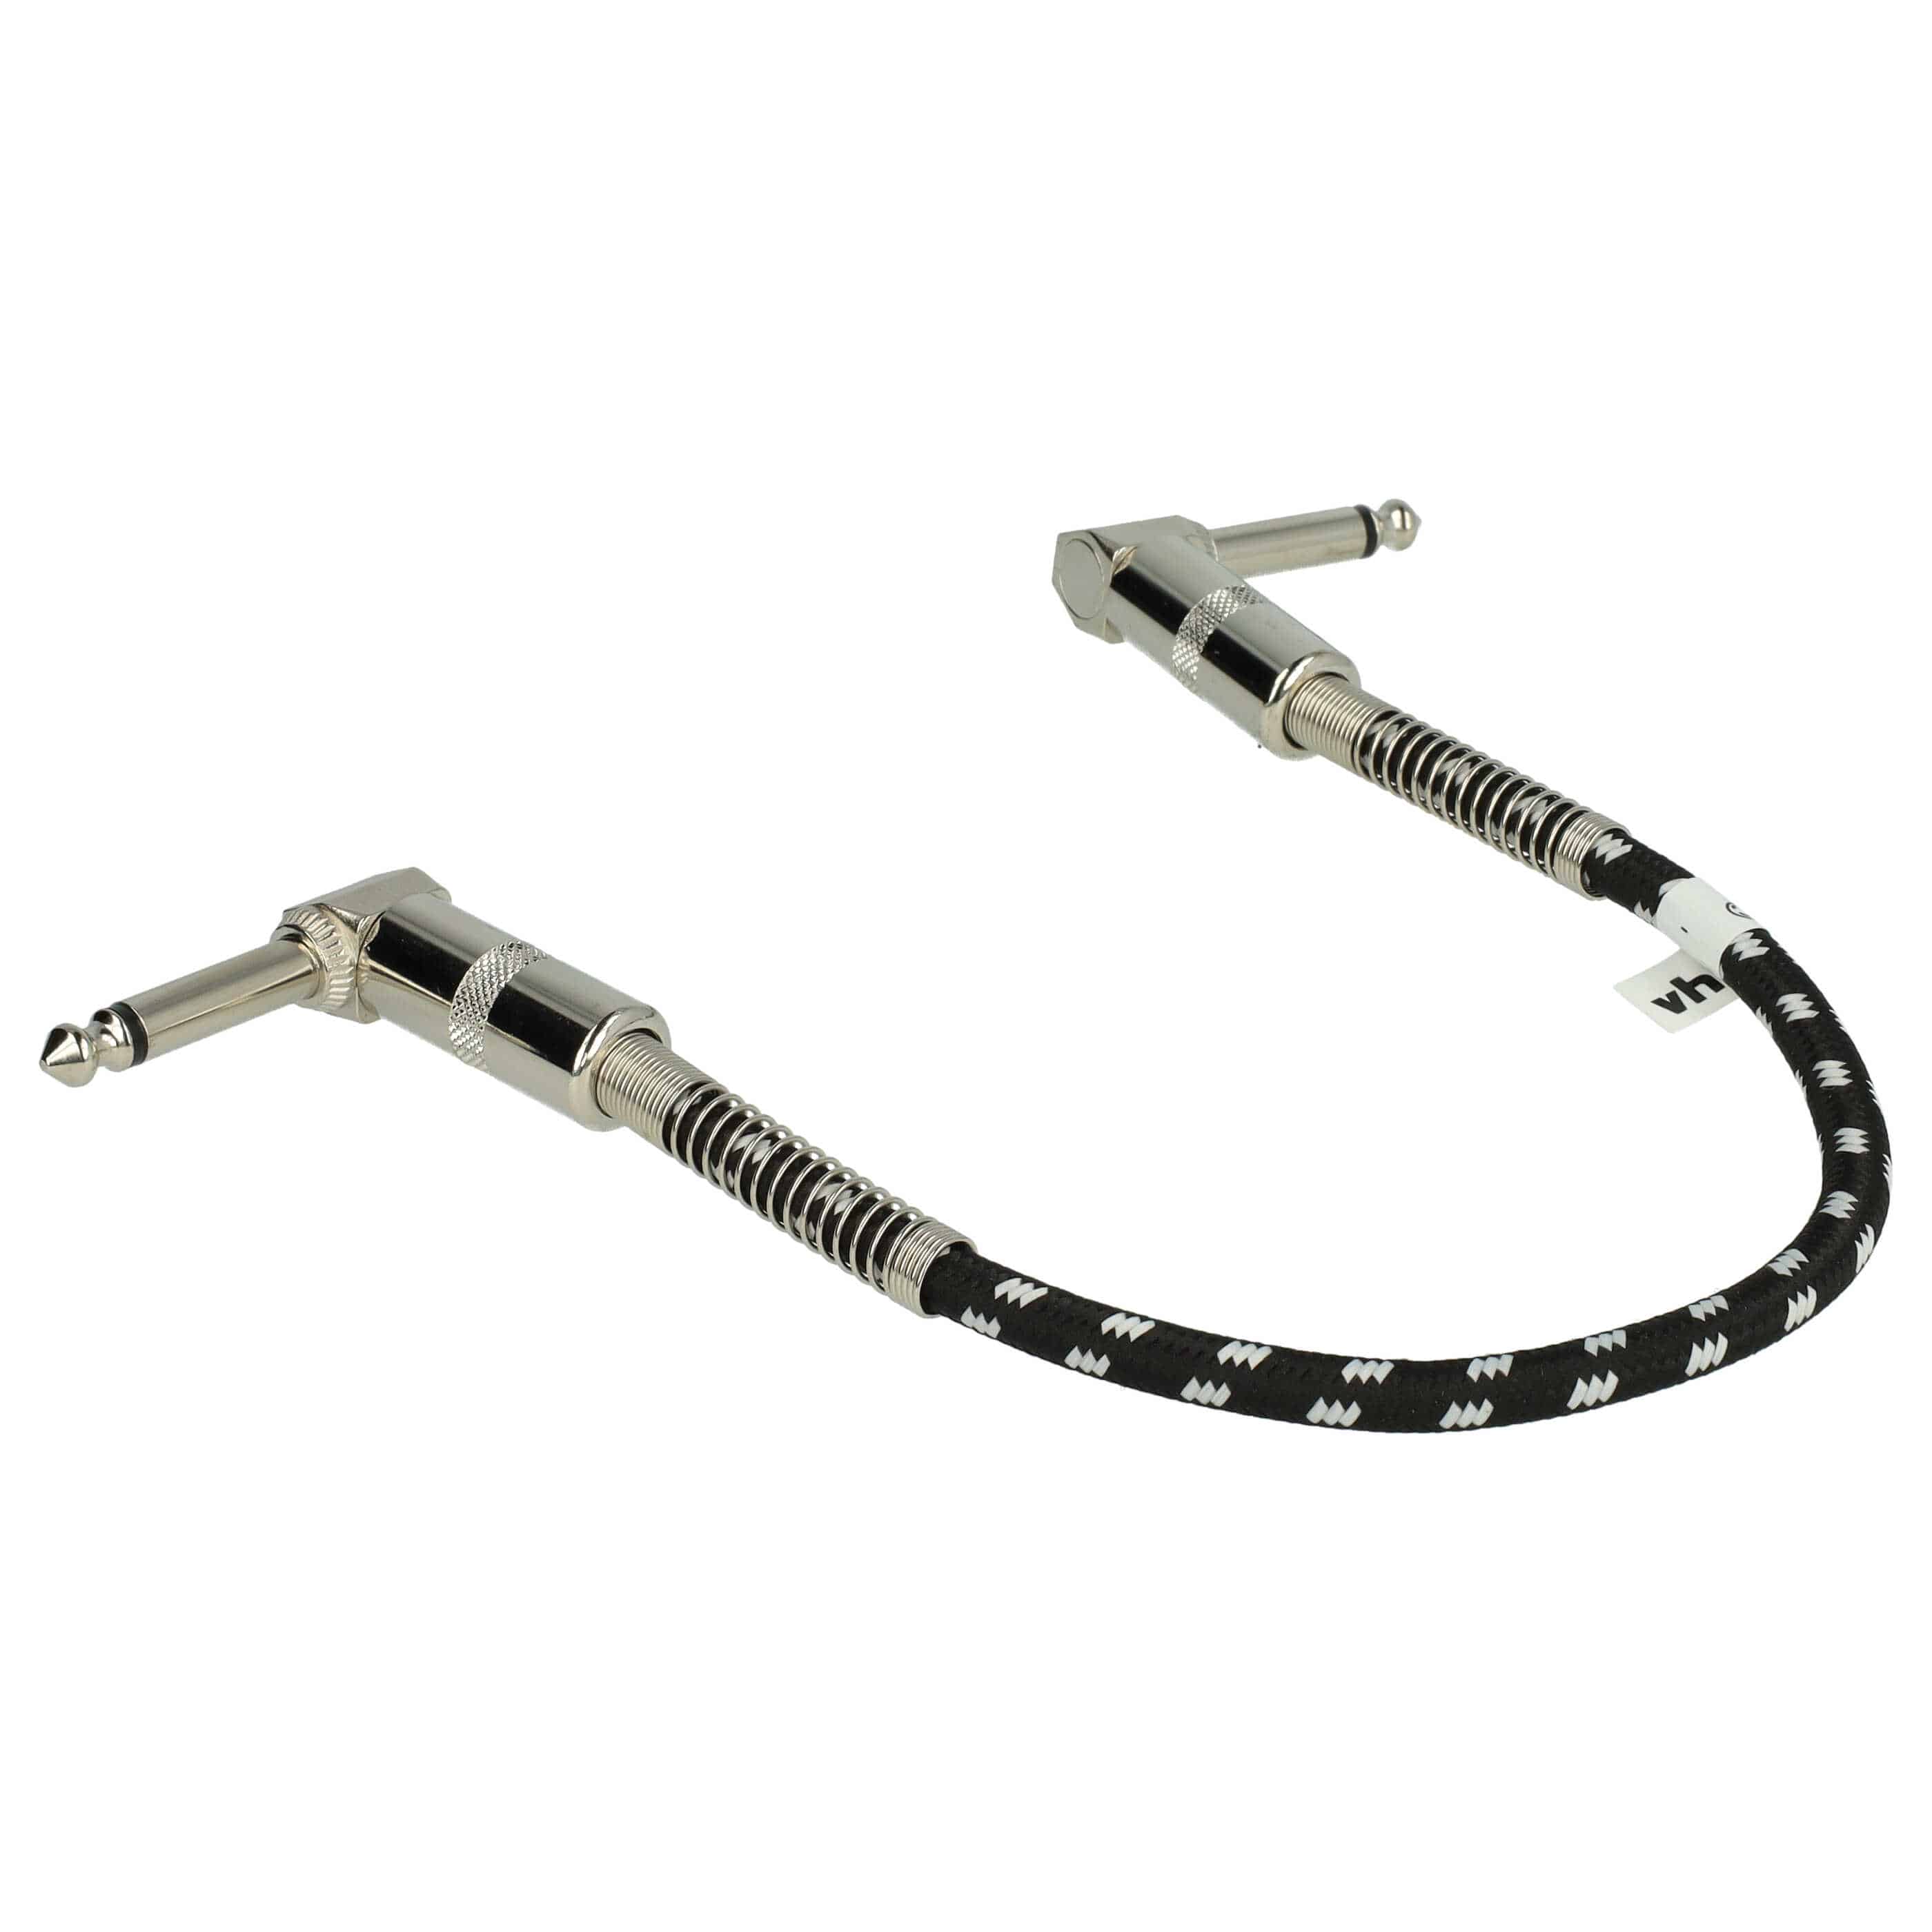 vhbw Gitarren-Patchkabel 30cm Klinke Kabel für Effektpedale - Klinkenpatchkabel mit 6,35mm Klinkenstecker, gew